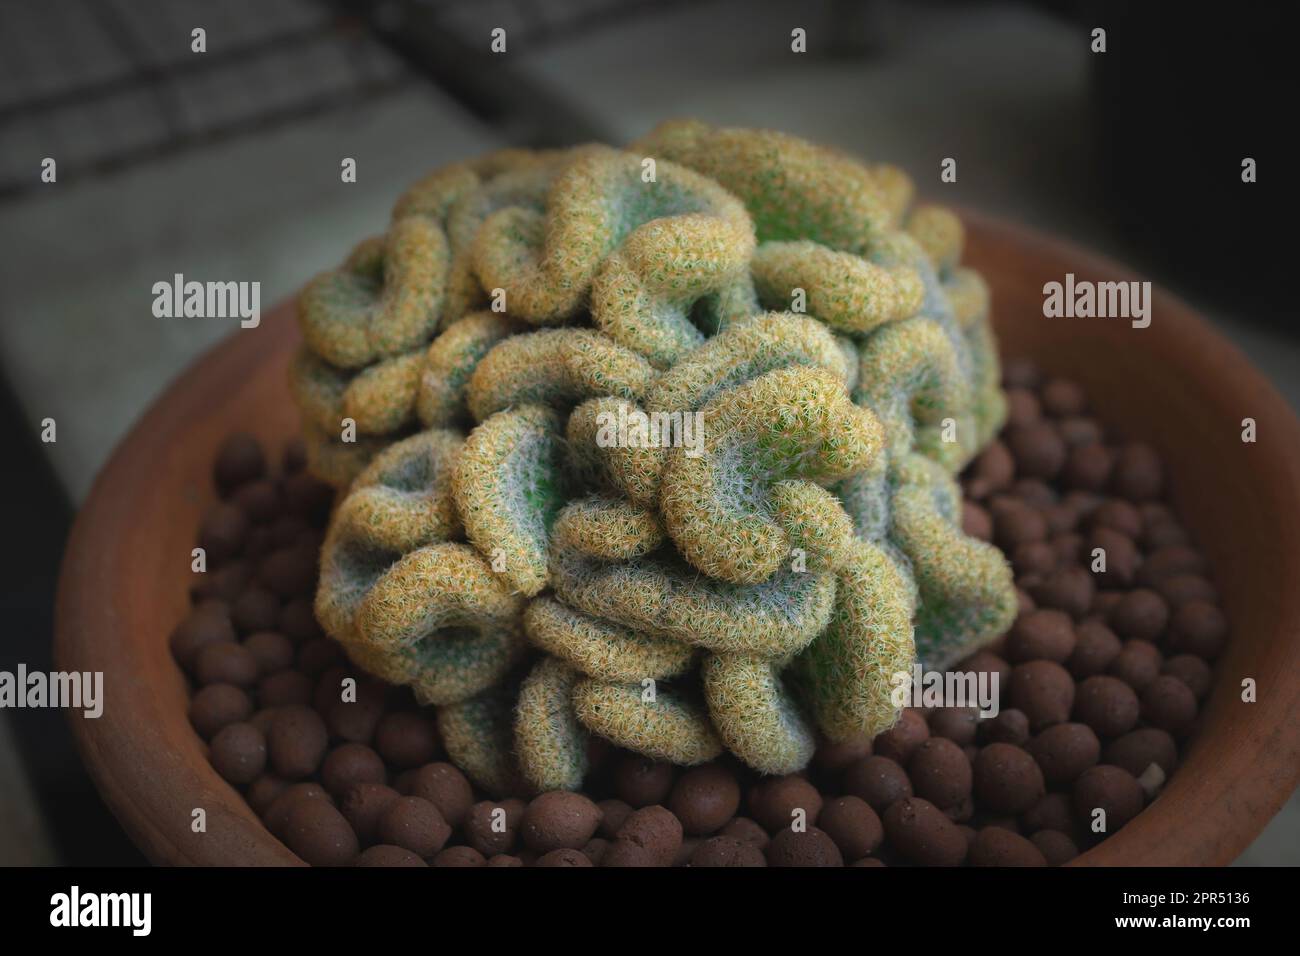 El Cactus Cerebral (Mammillaria elongata cristata) es un cactus loos como un cerebro humano en una maceta. Primer plano. Foto de stock